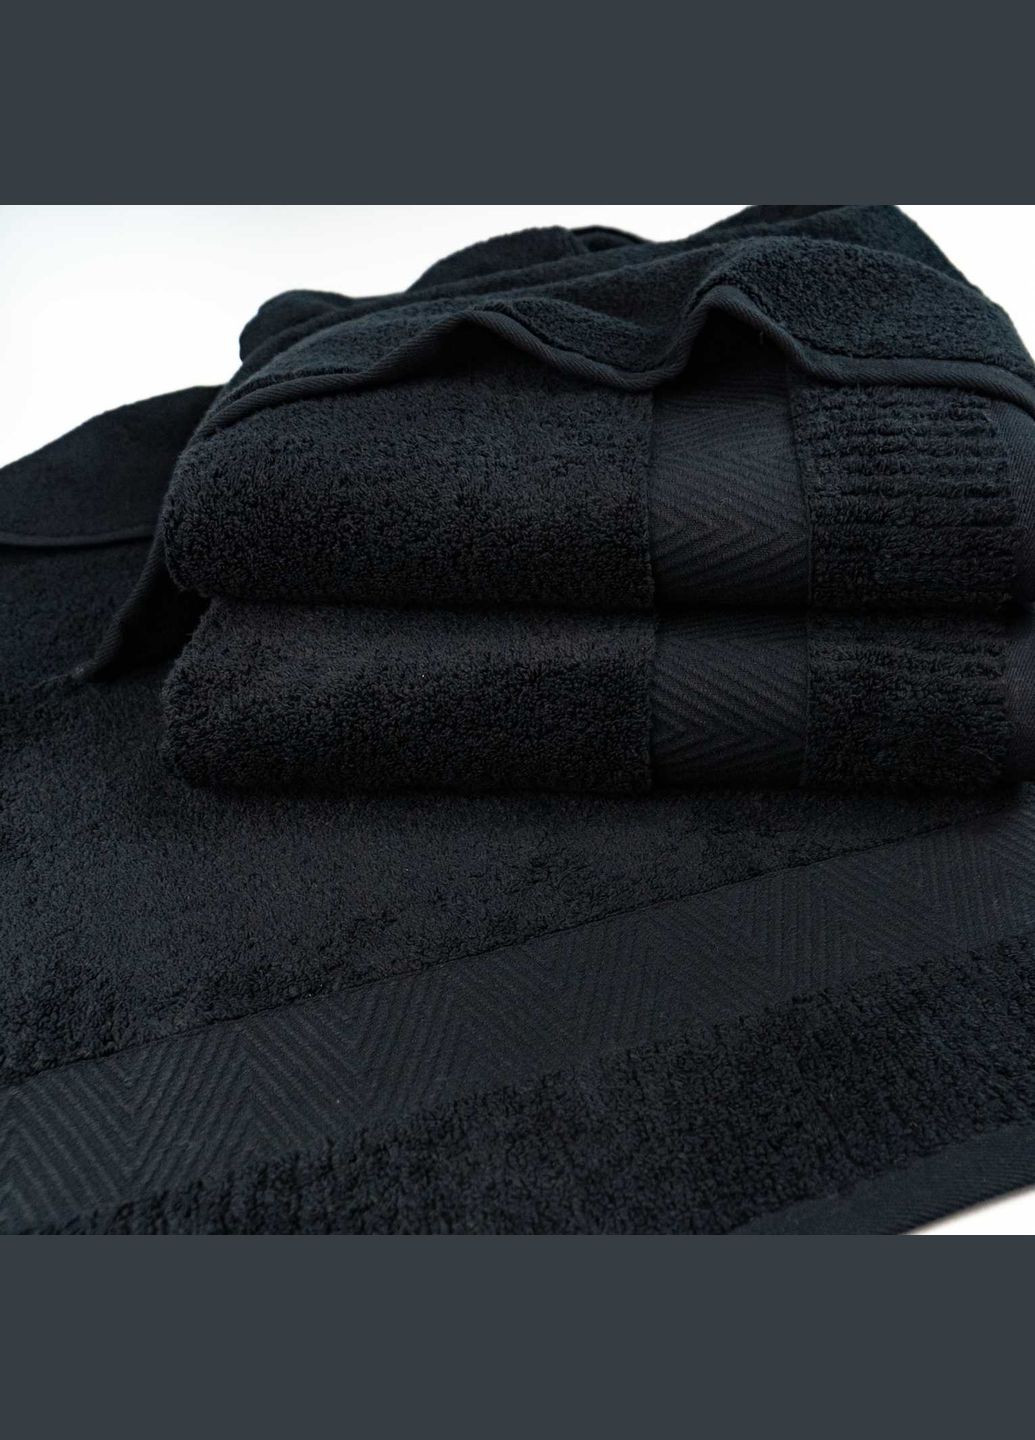 GM Textile большое банное махровое полотенце 100x150см премиум качества зеро твист бордюр 550г/м2 () черный производство -